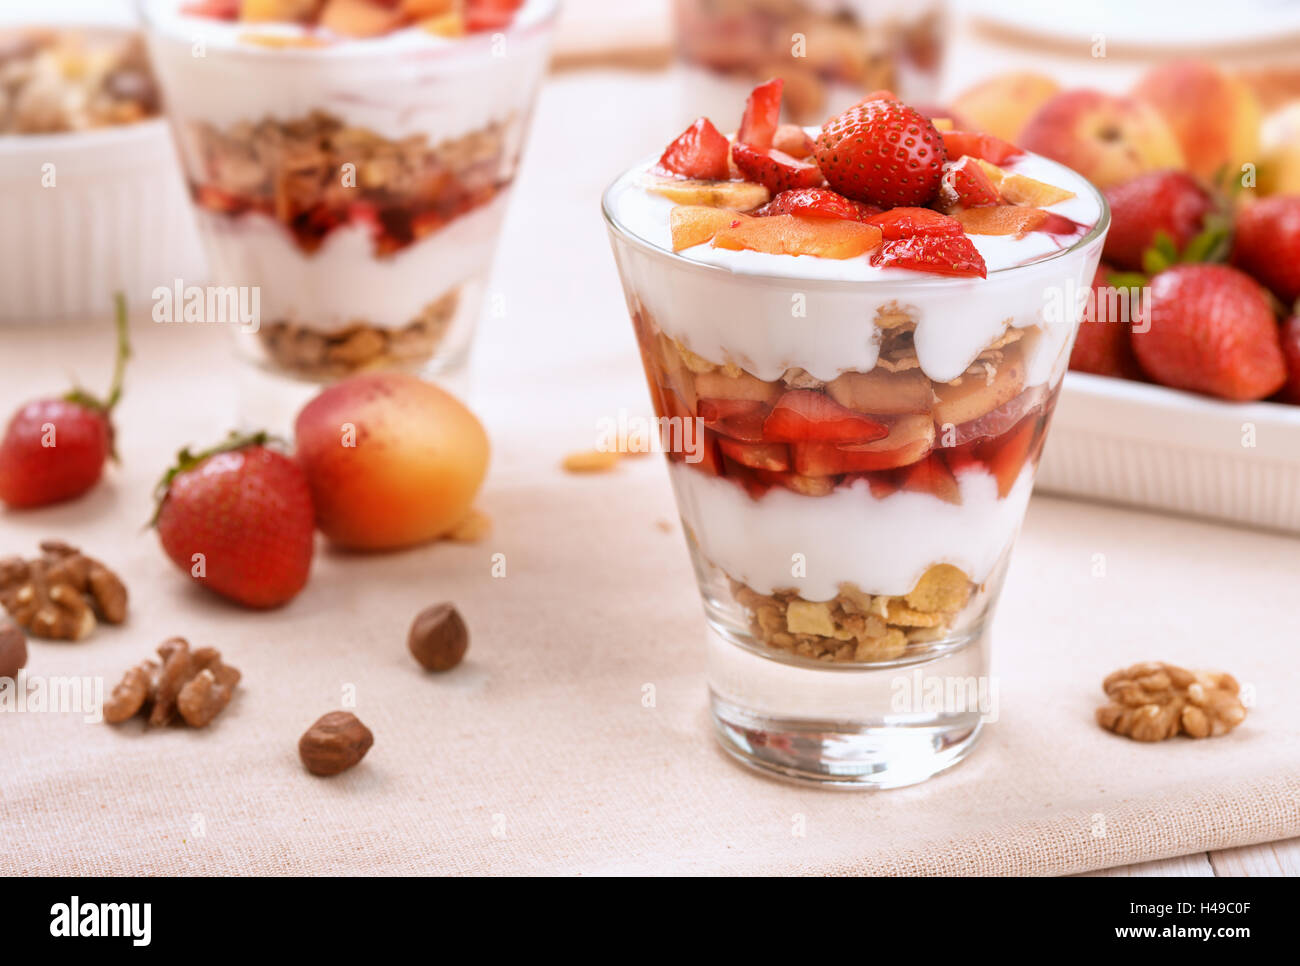 Berries and granola parfait layered dessert Stock Photo